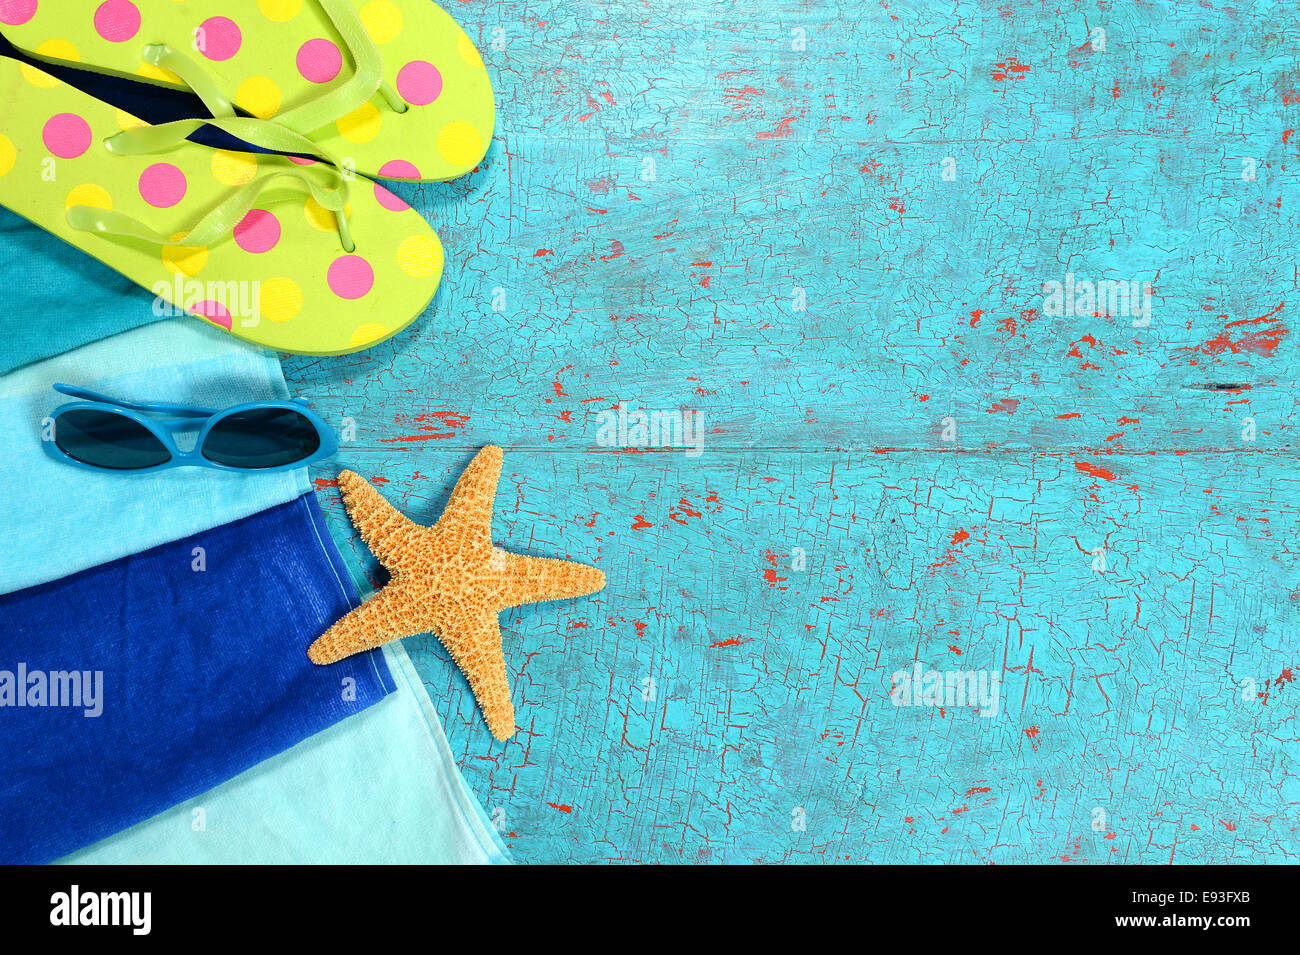 Strand-Handtuch, Sonnenbrille, Seesterne und Flip flops über bemalte hölzerne Planken Stockfoto